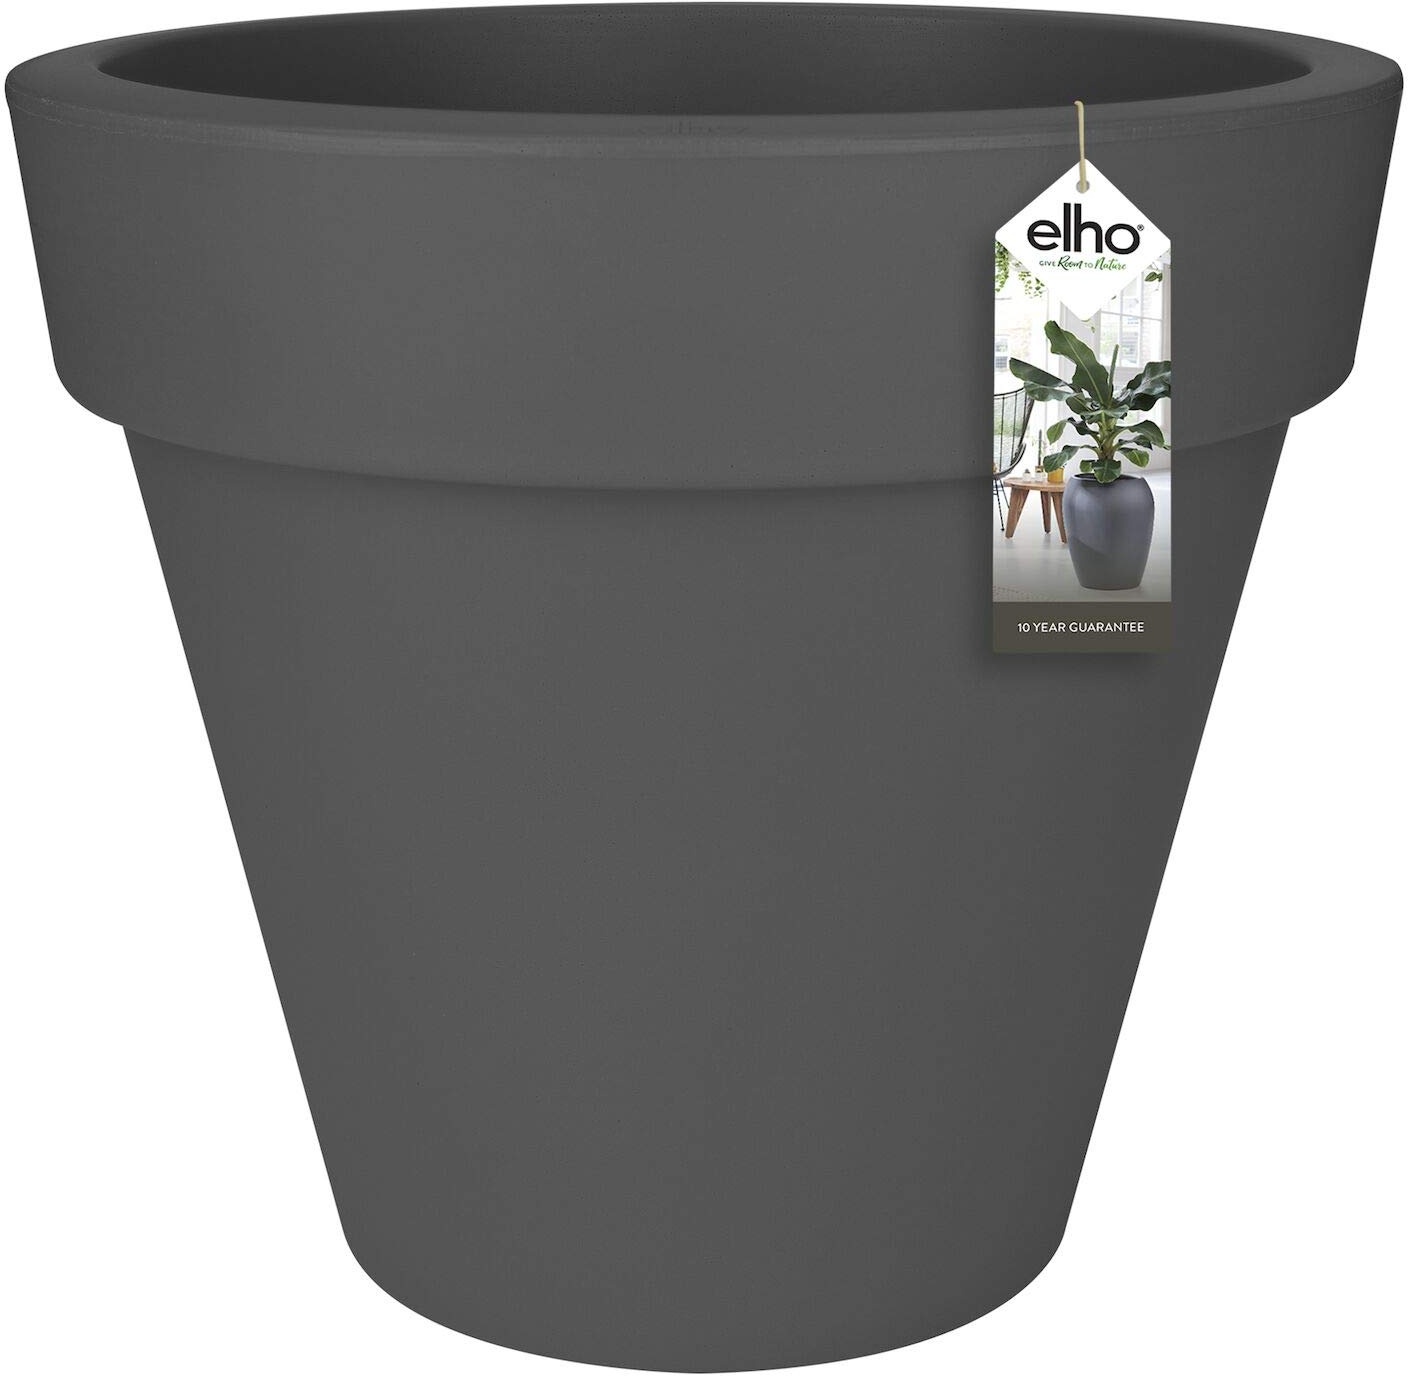 elho Pure Round 60 - Blumentopf für Innen & Außen - Ø 59.0 x H 53.6 cm - Schwarz/Anthrazit